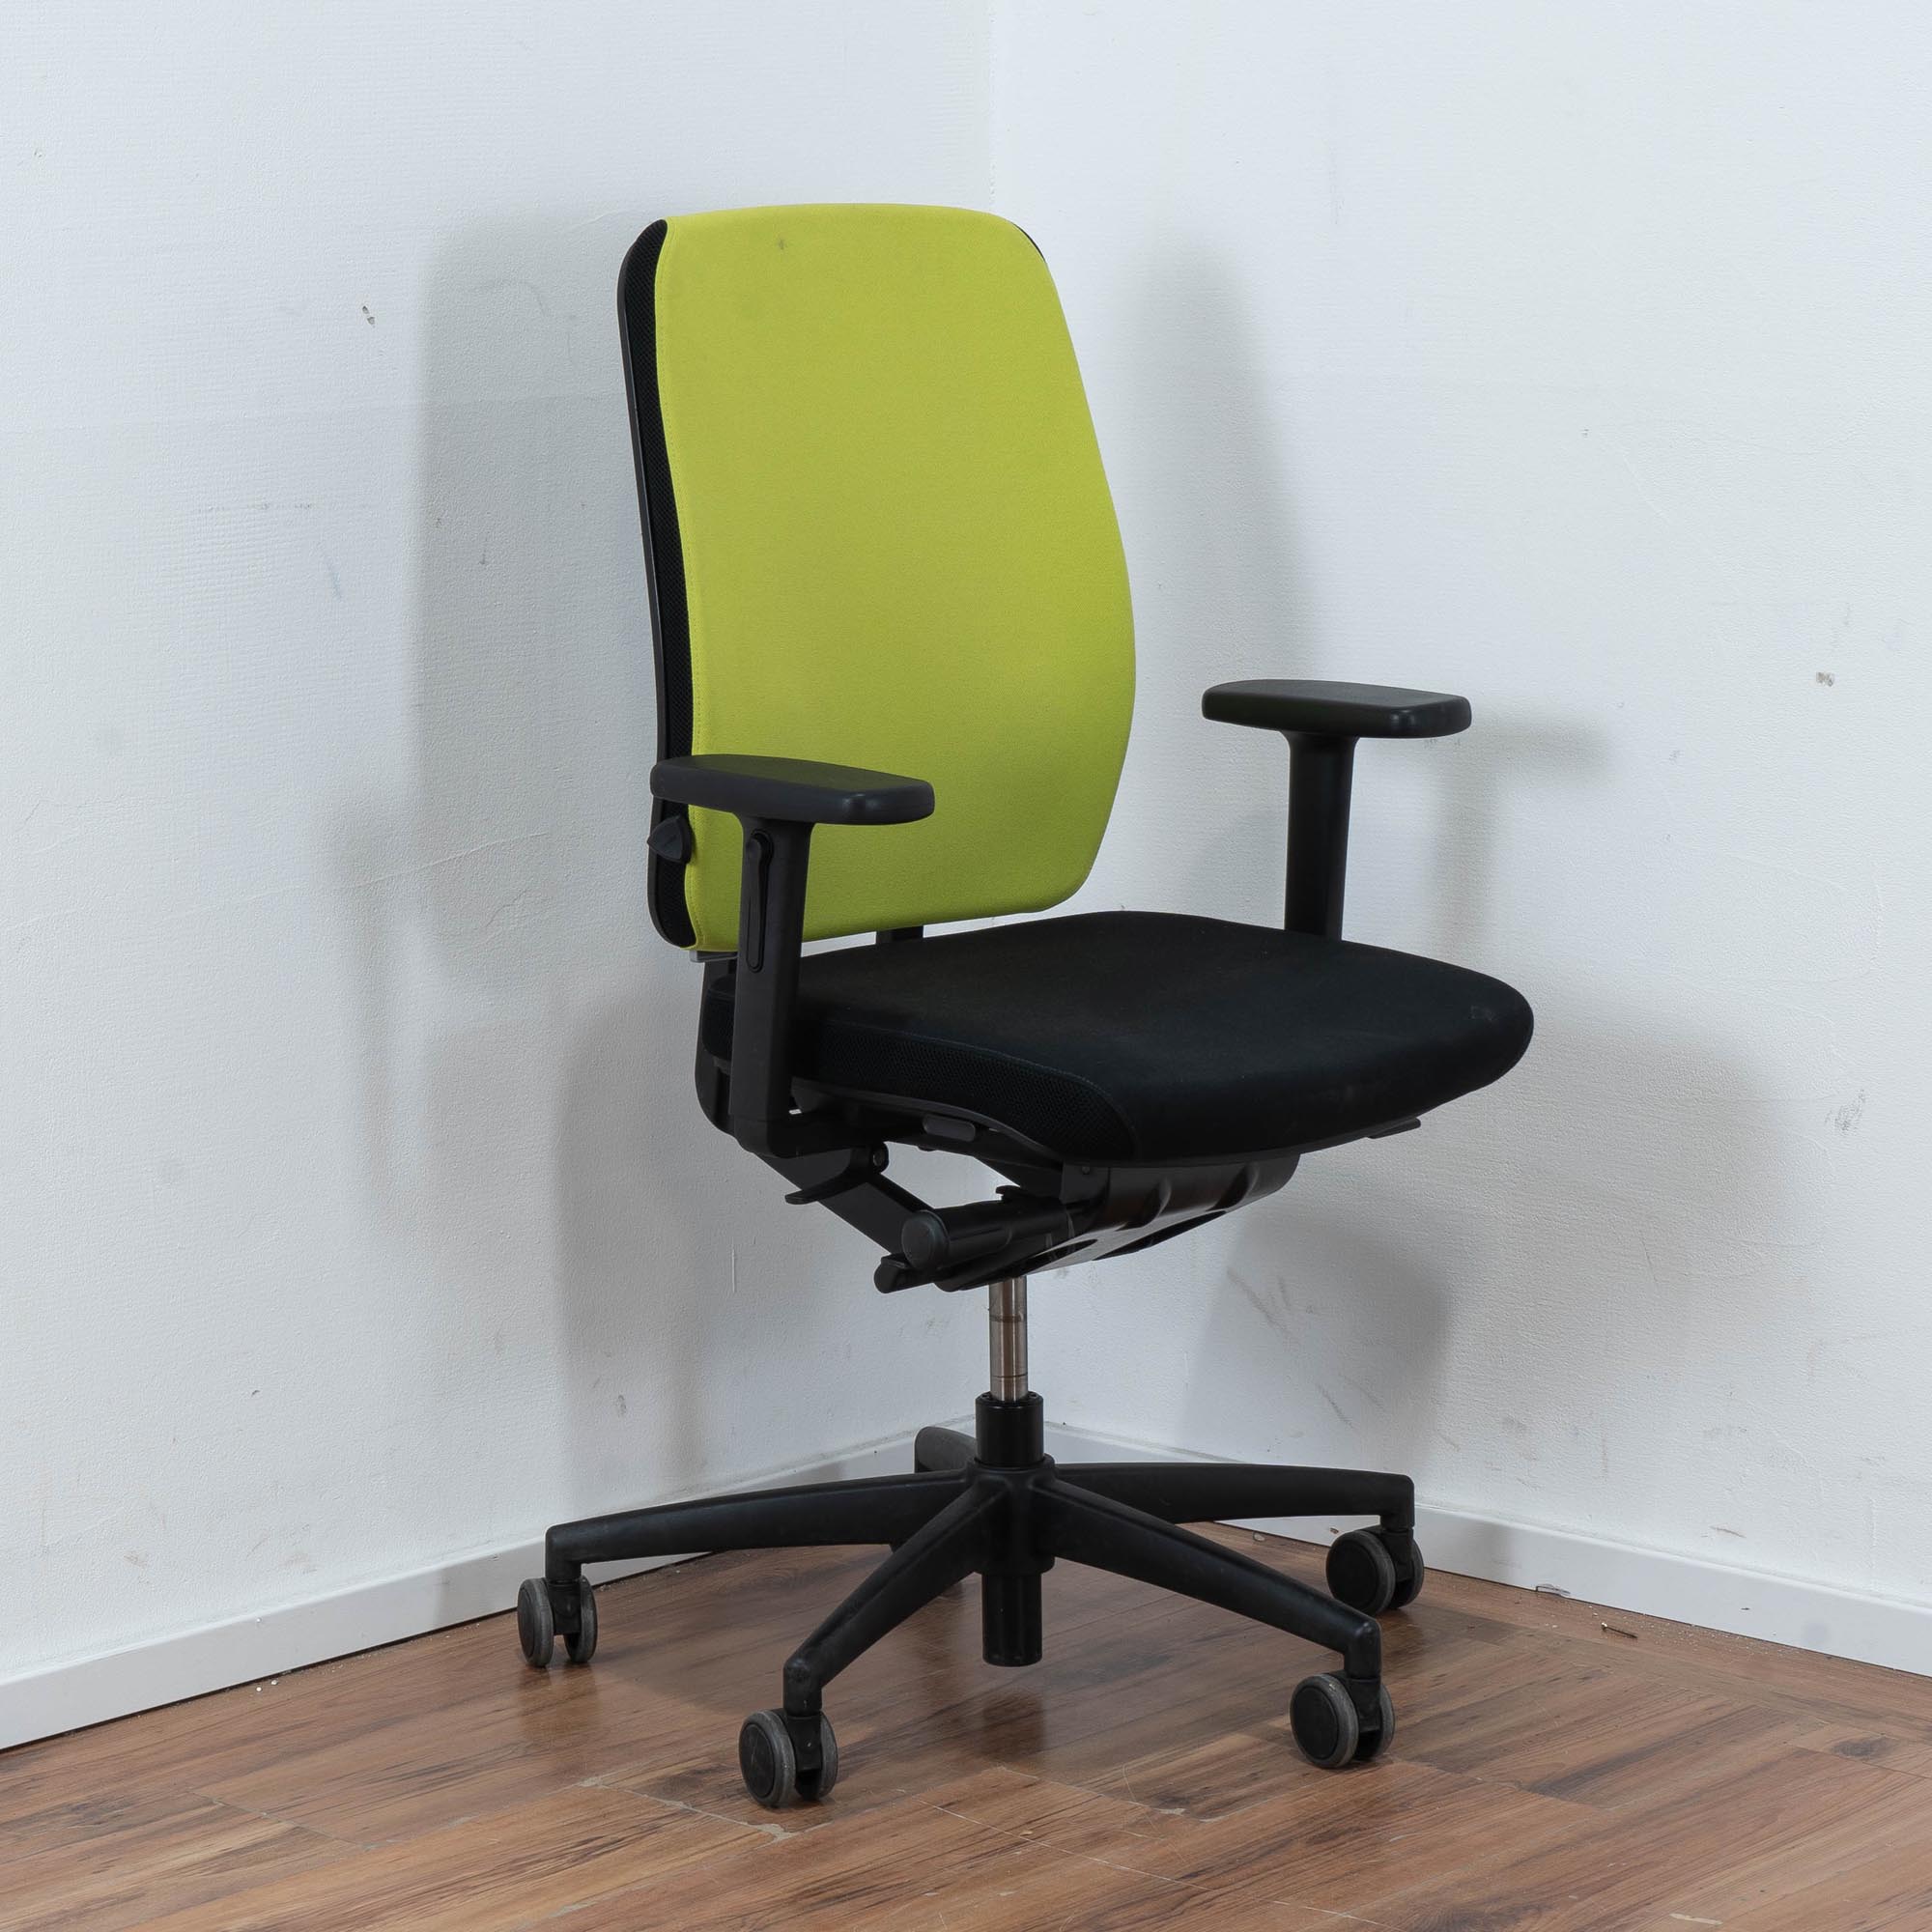 Nowy Styl Bürodrehstuhl Polster schwarz - Rückenlehne grün - mit Armlehnen